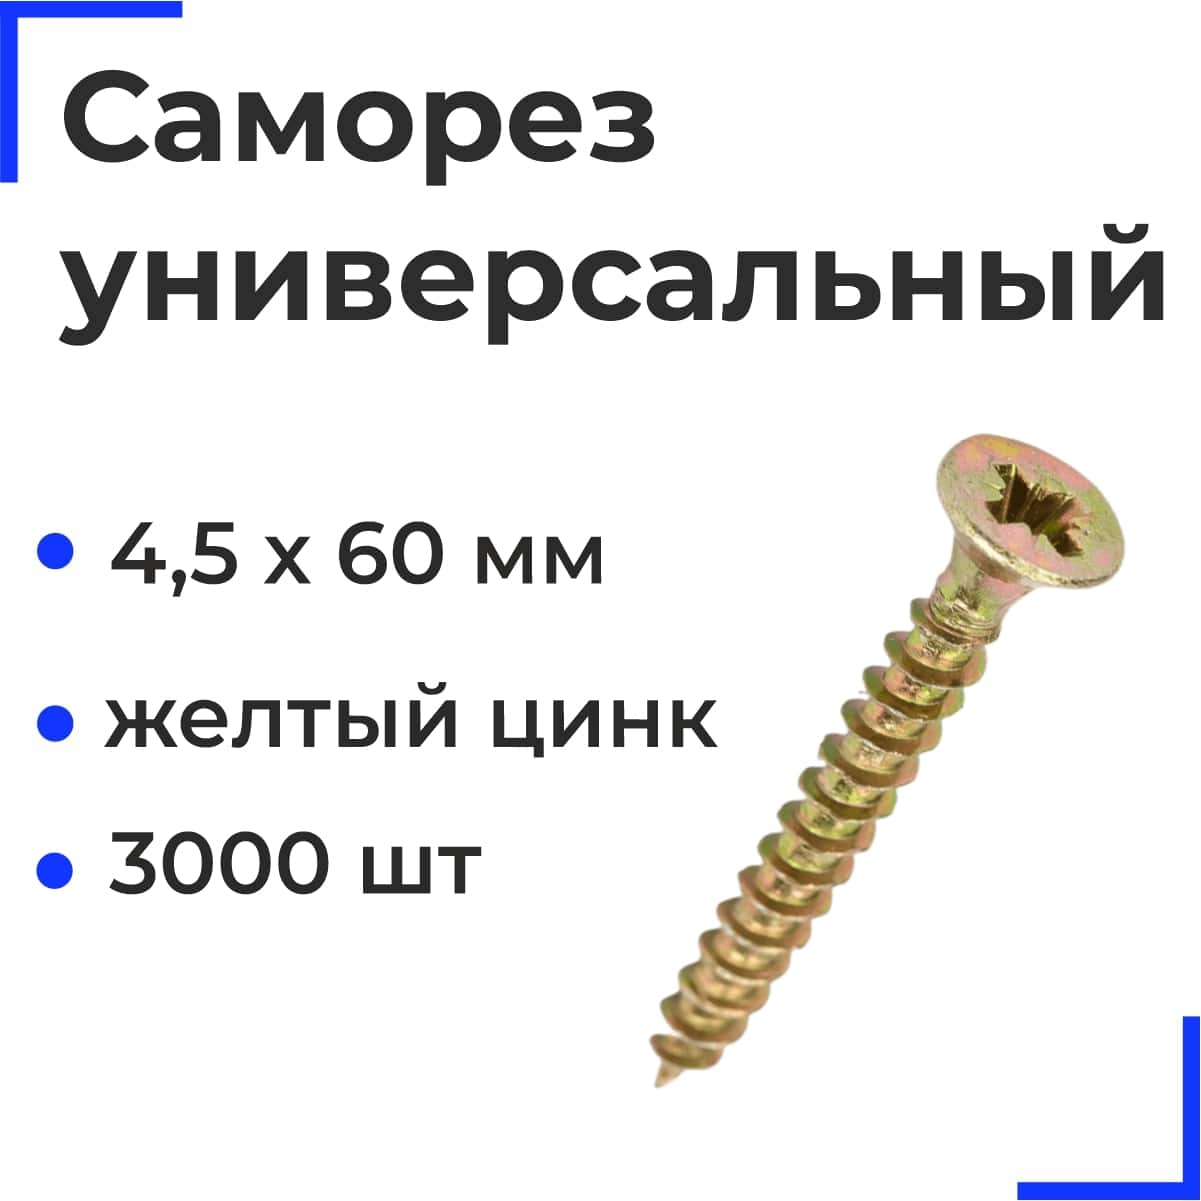 Саморез универсальный 4,5х60 желтый цинк (3000шт/11,8кг) РФ